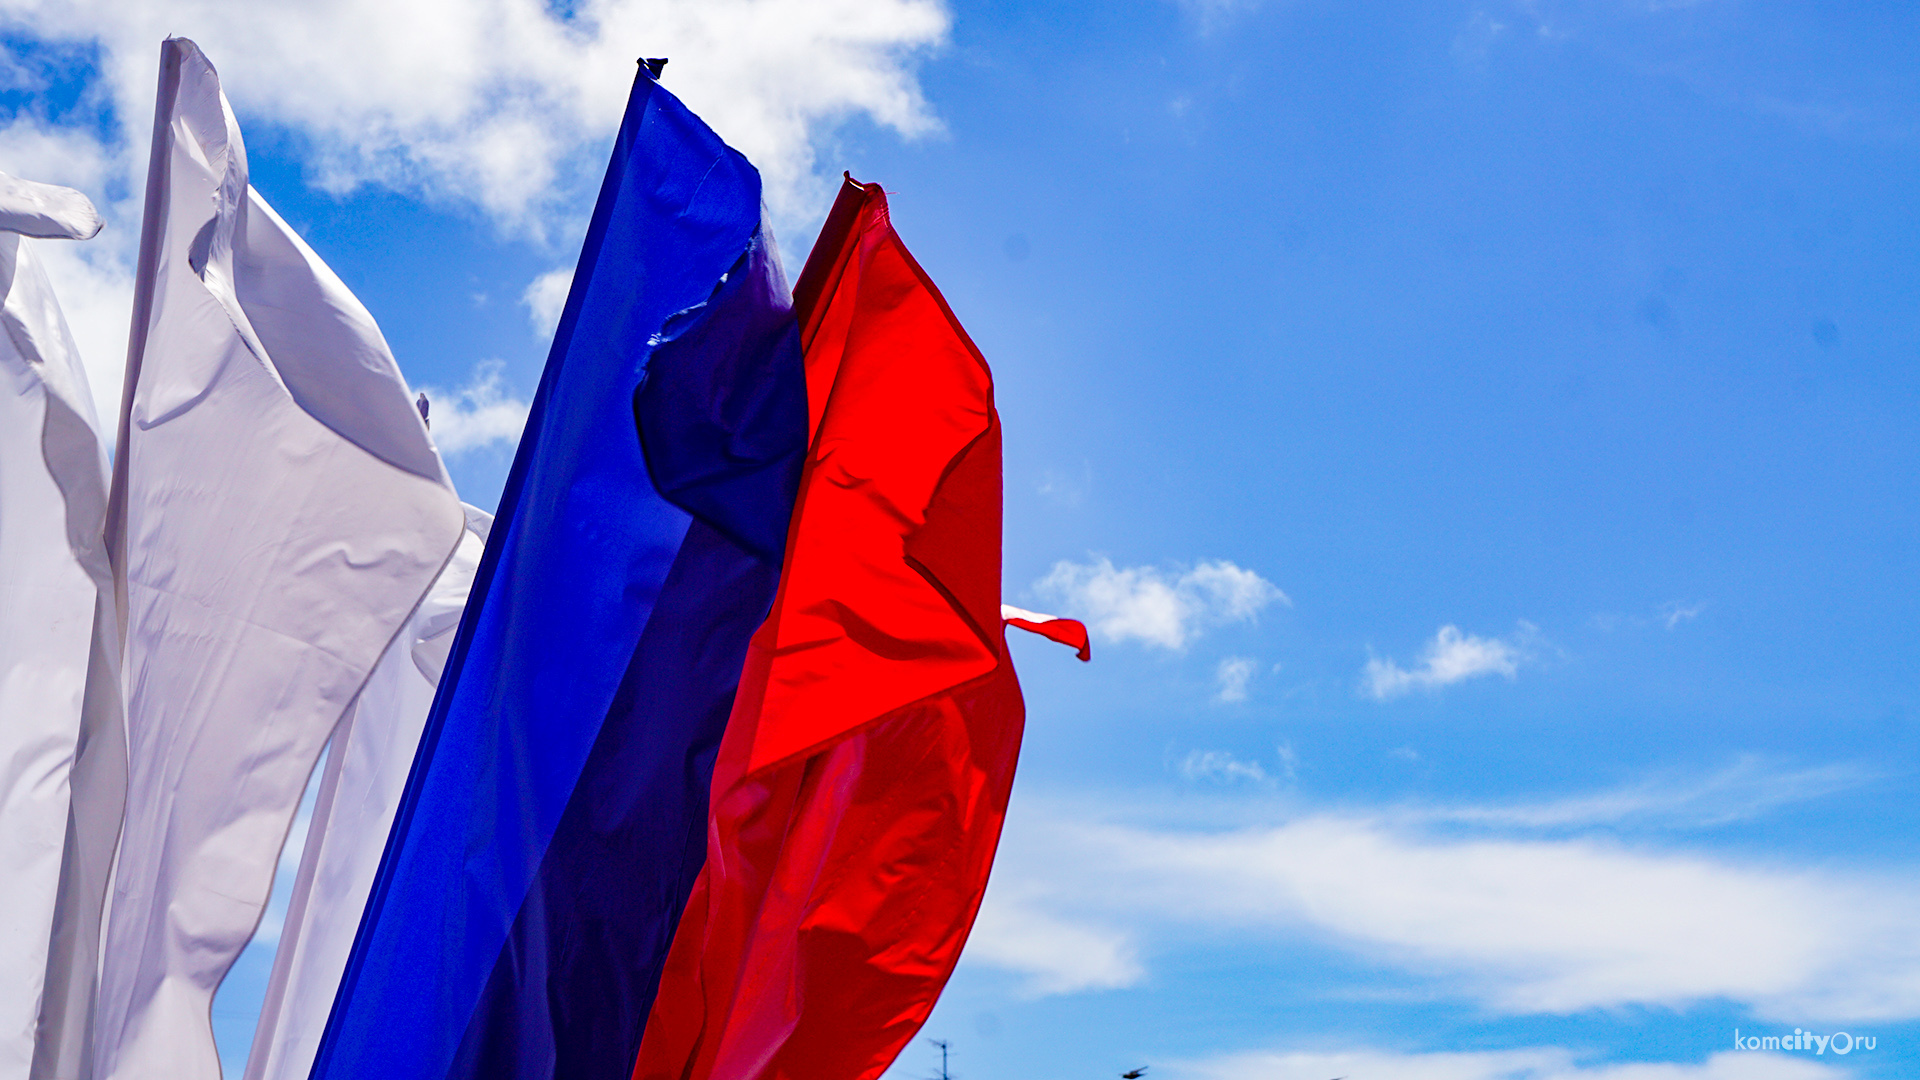 Фотокросс в честь Дня флага провели в Комсомольске-на-Амуре